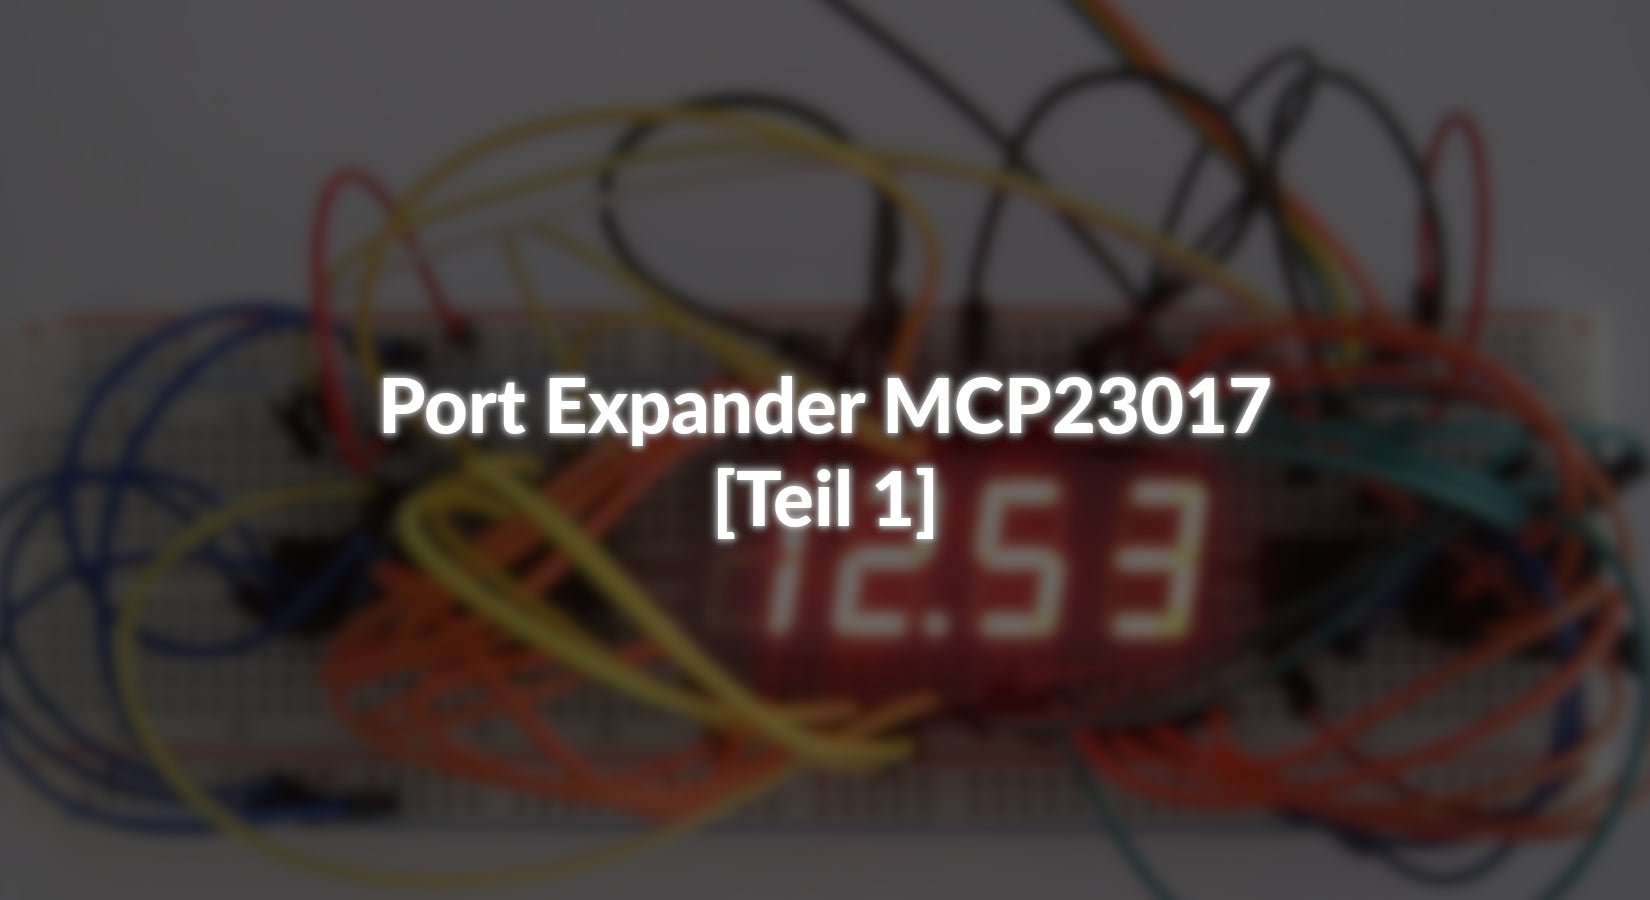 Port Expander MCP23017 - [Teil 1] - AZ-Delivery